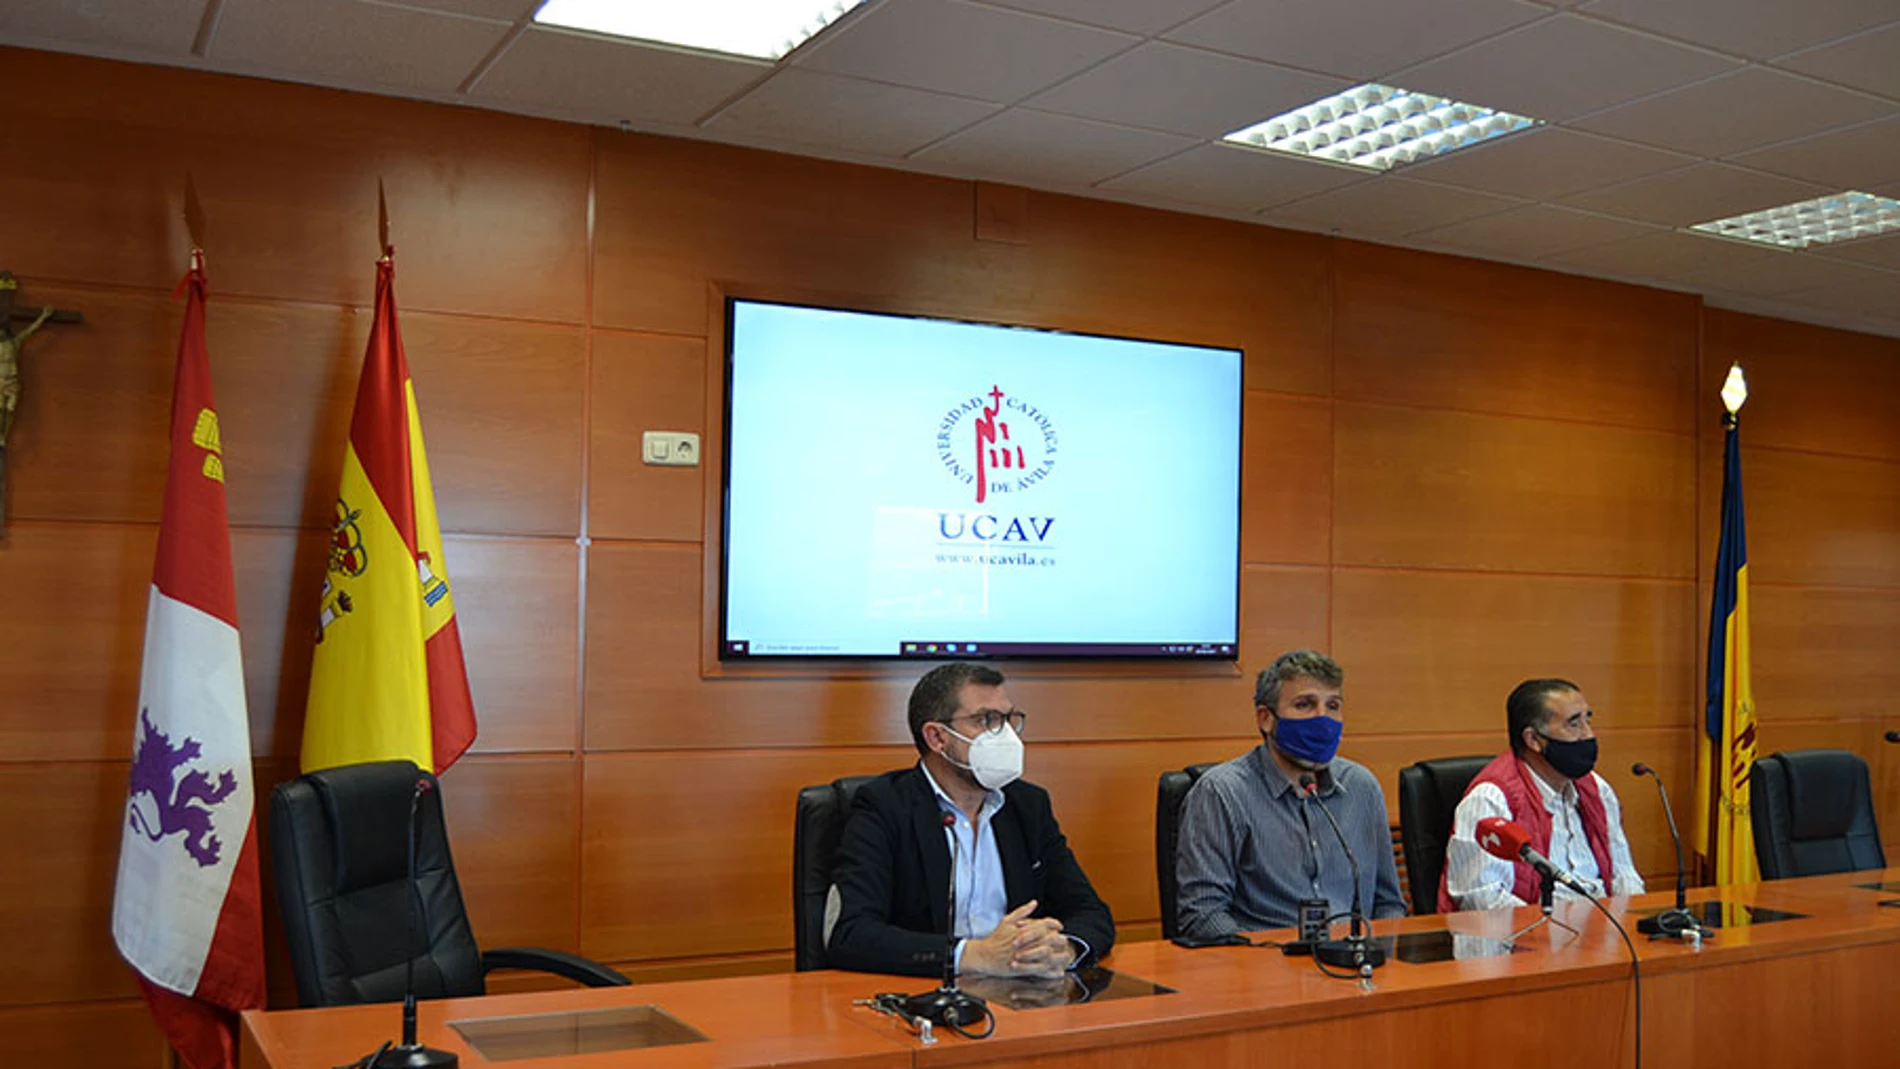 La Ucav y la Casa Social refuerzan su compromiso educativo, deportivo y social